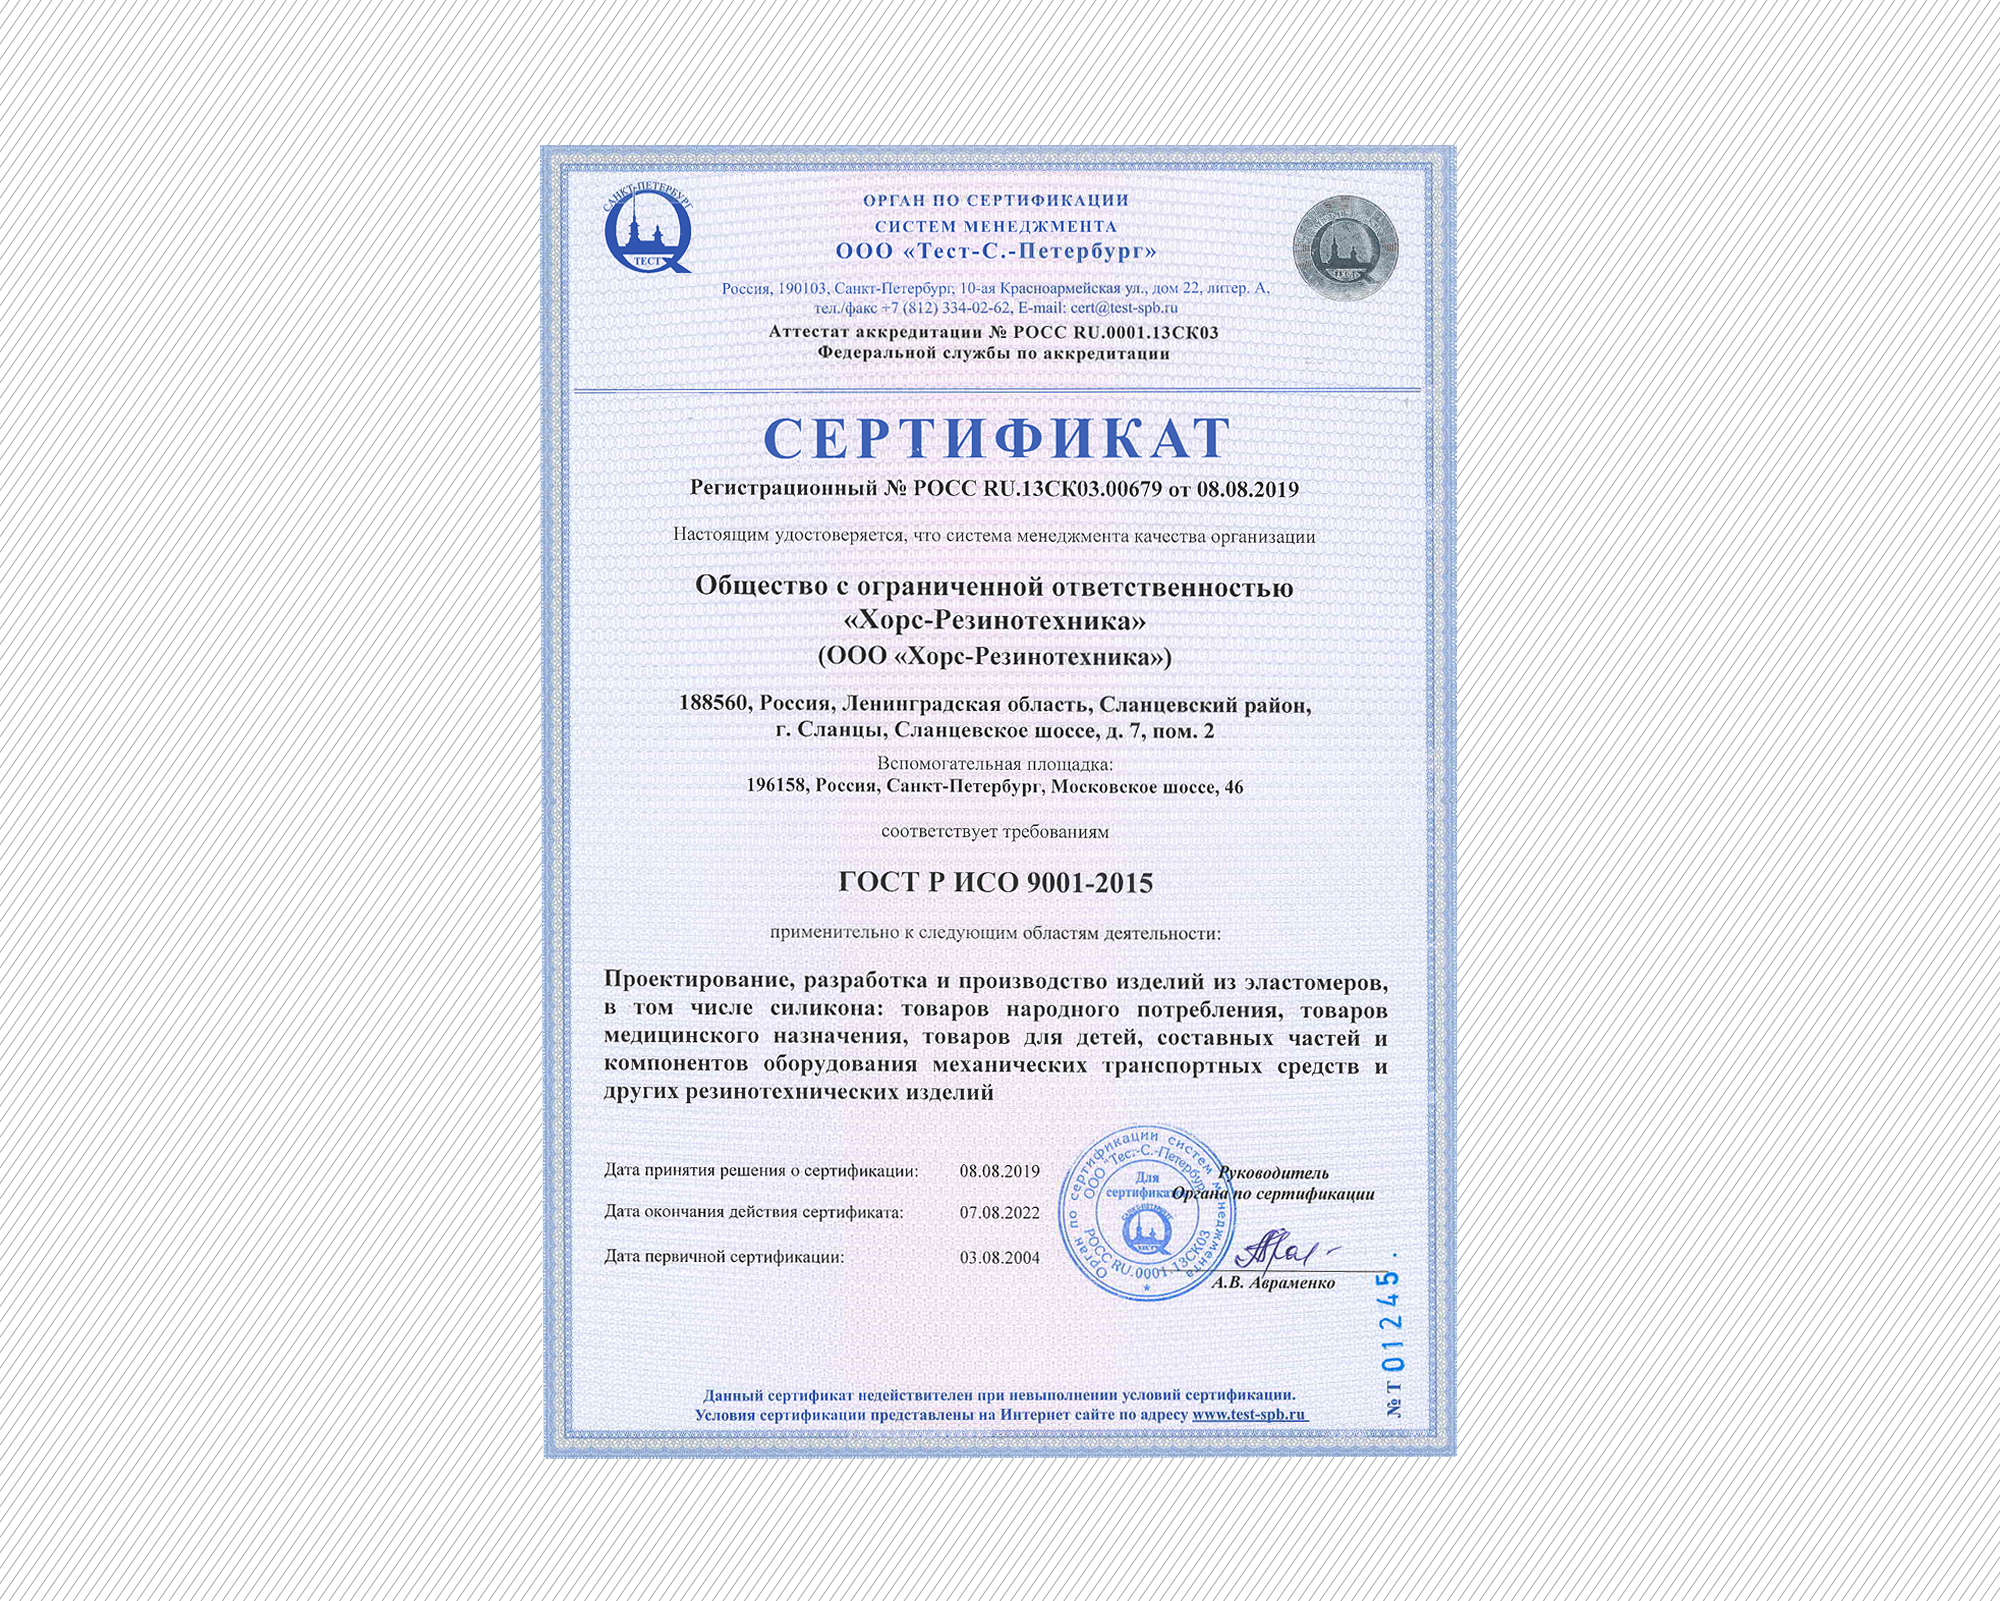 Национальные сертификаты соответствия. Сертификата СМК ИСО 9001-2015. Сертификат соответствия ИСО 9001 2115. Сертификат соответствия требованиям ГОСТ Р ИСО 9001-2015. Сертификат системы менеджмента качества ИСО 9001.